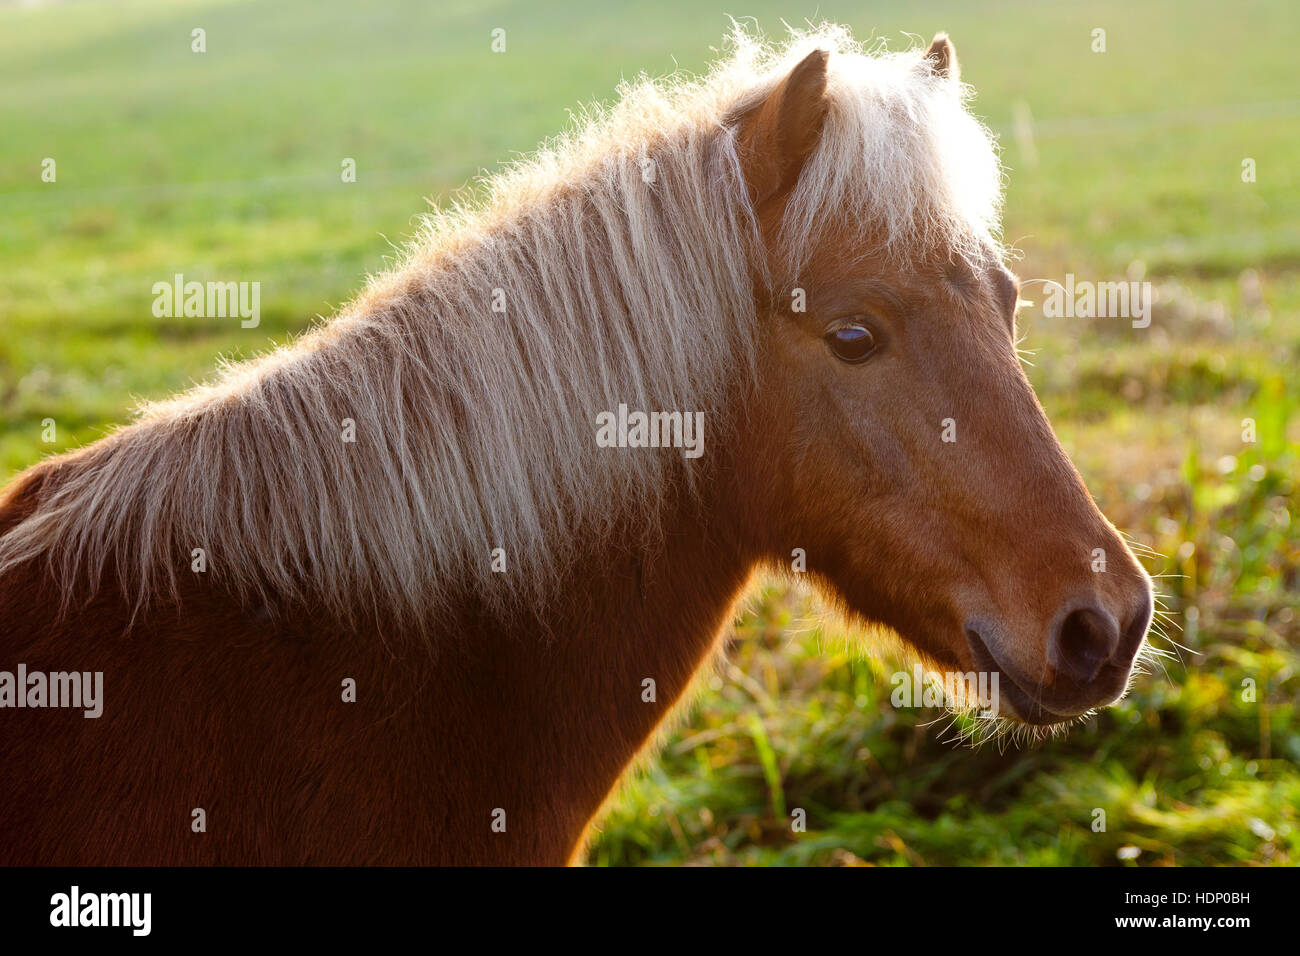 Europe, Germany, North Rhine-Westphalia, pony on a meadow. Stock Photo